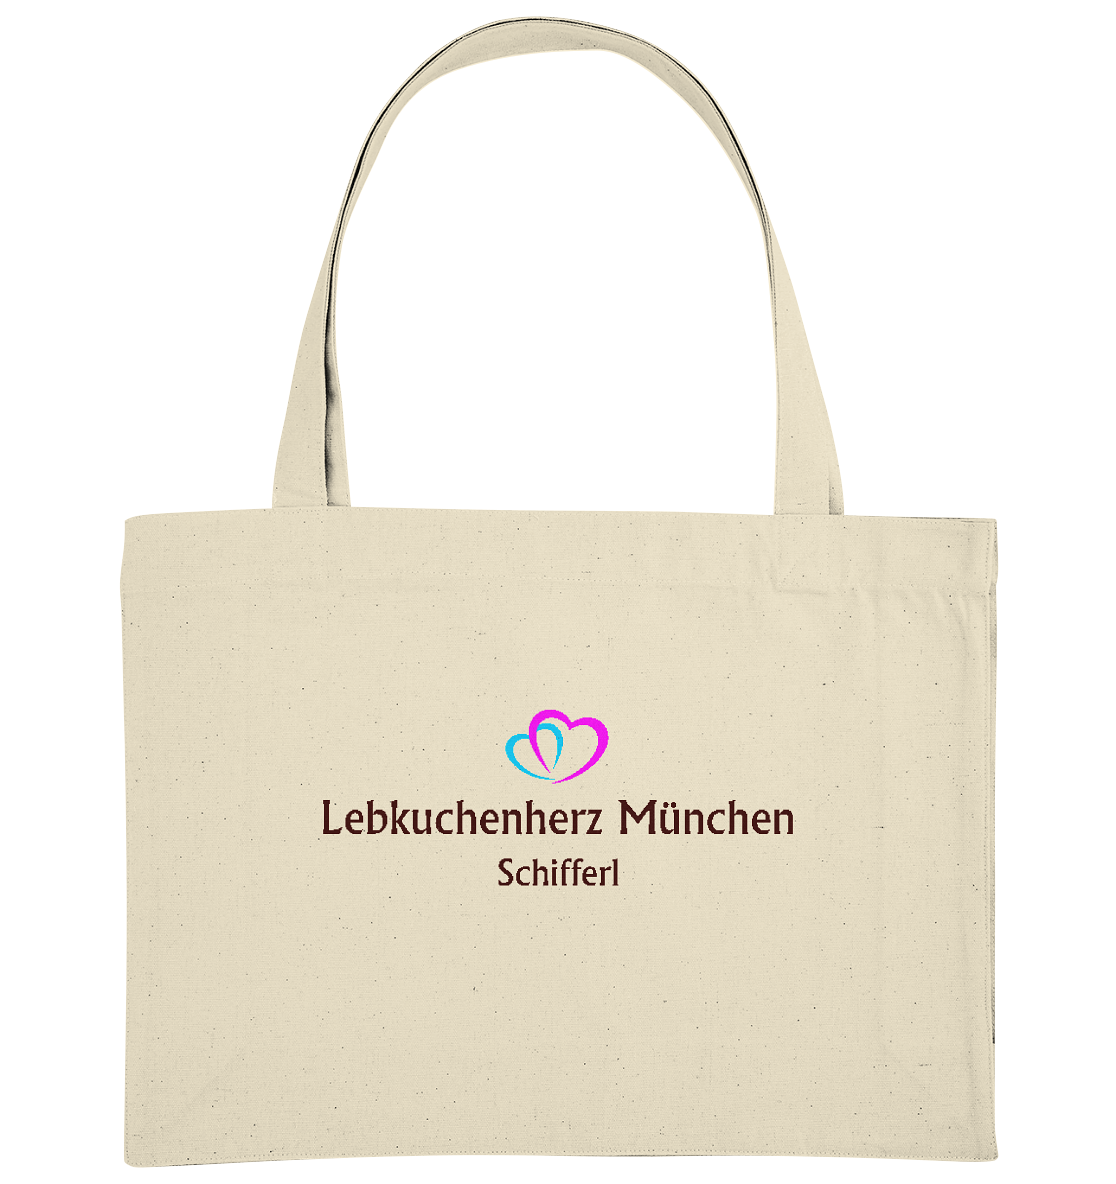 Baumwolltaschen mit eigenem Logo - Organic Shopping-Bag - Online Kaufhaus München